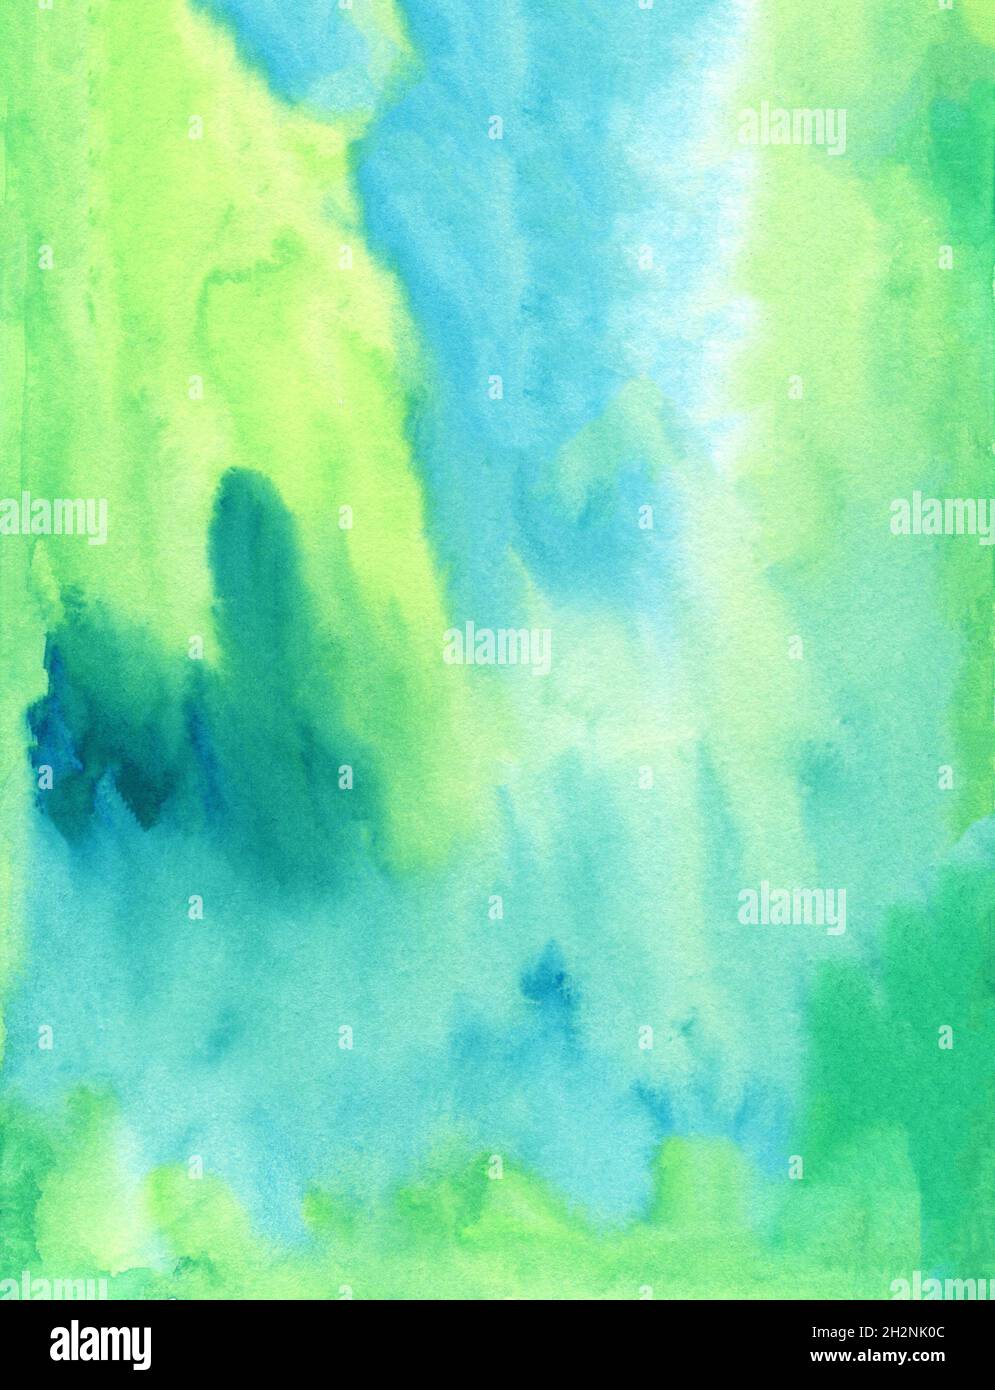 Aquarell abstrakter Hintergrund, handbemalte Textur, Aquarell blaue und grüne Flecken. Design für Hintergründe, Tapeten, Abdeckungen und Verpackungen Stockfoto